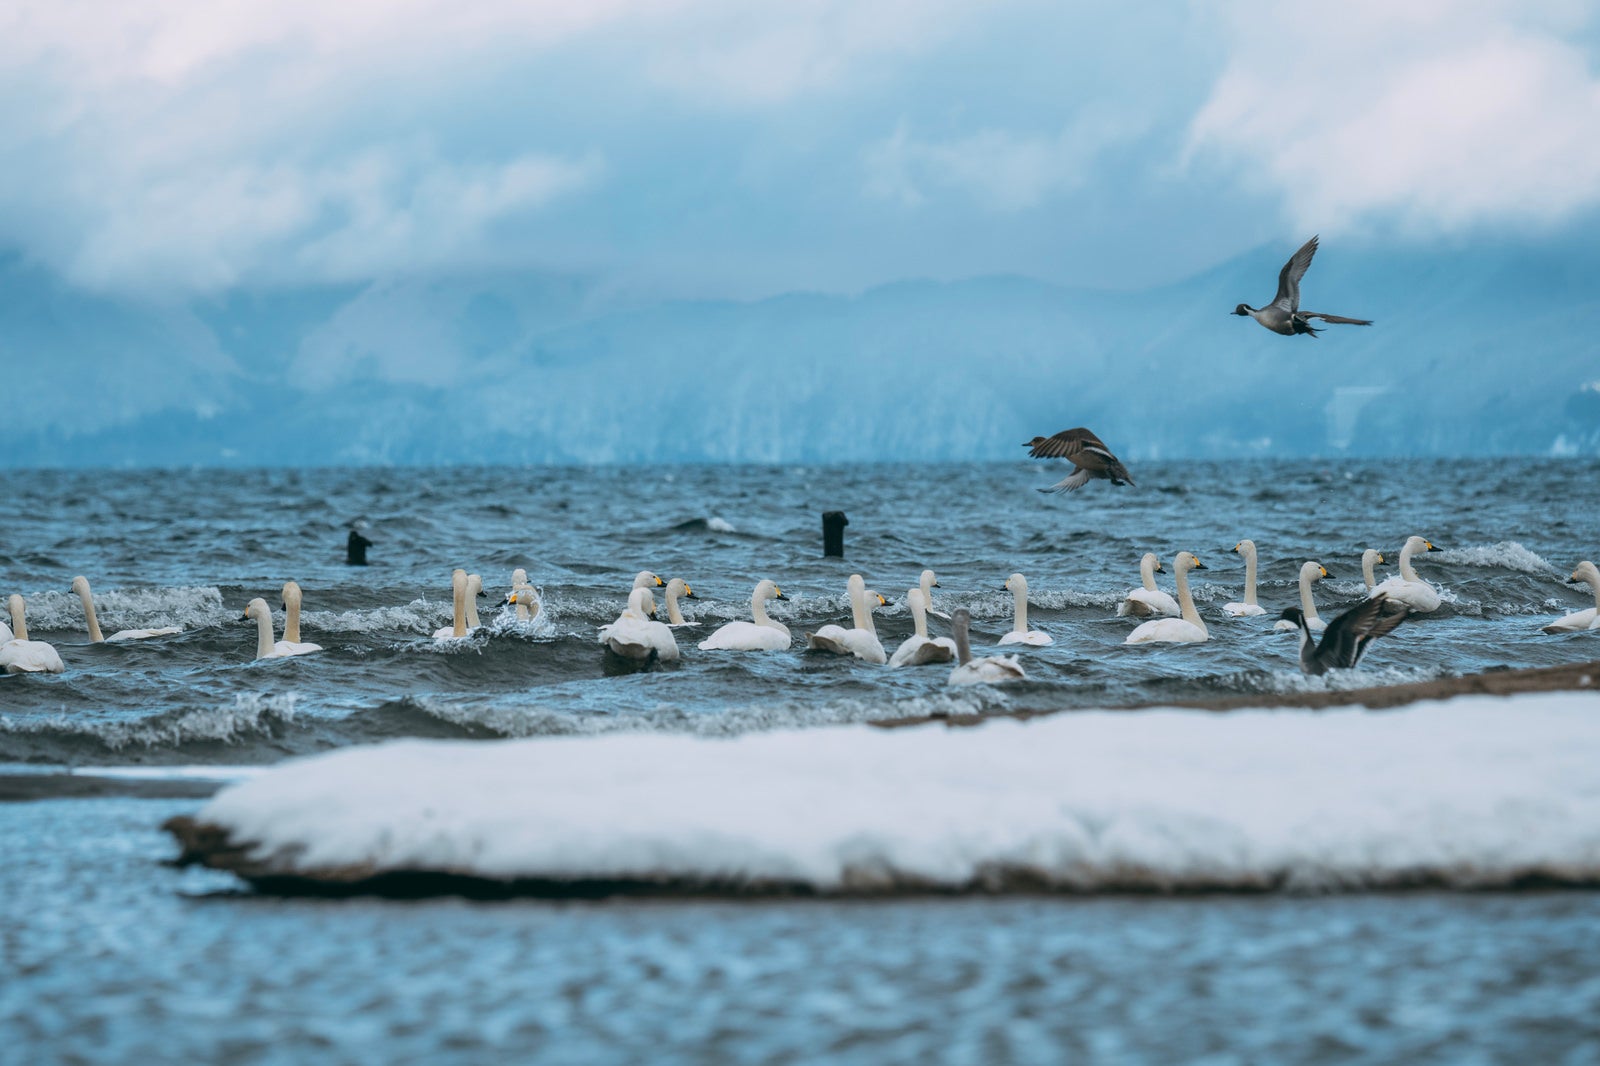 「猪苗代湖を泳ぐ白鳥と飛翔する鴨」の写真